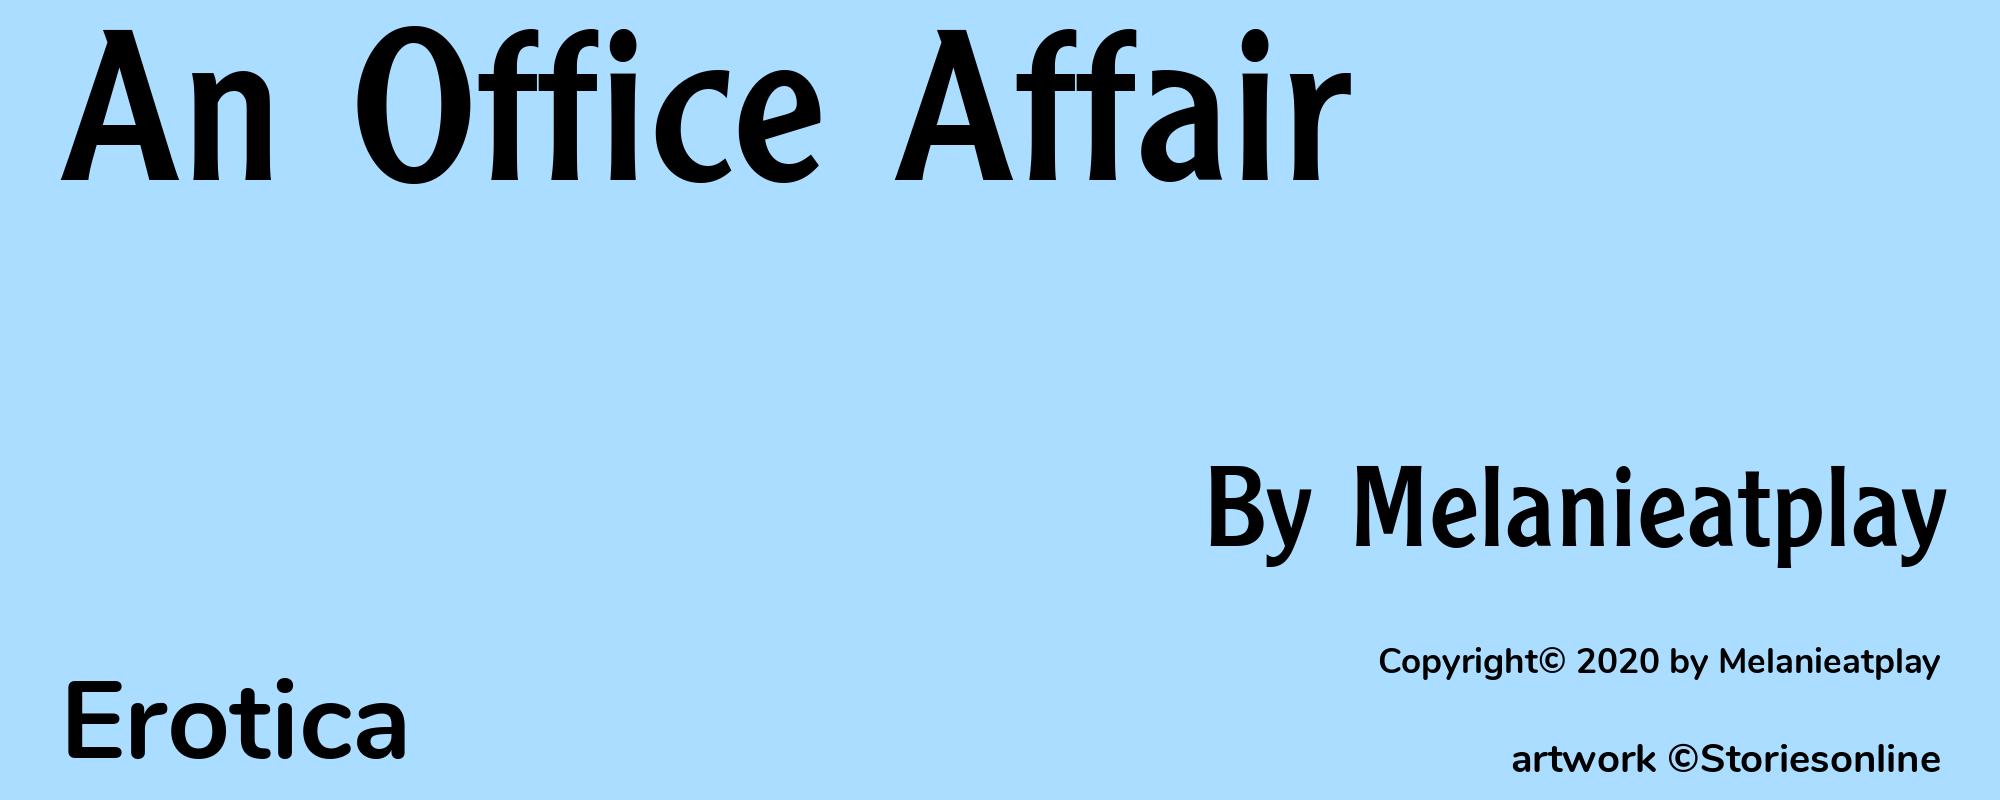 An Office Affair - Cover